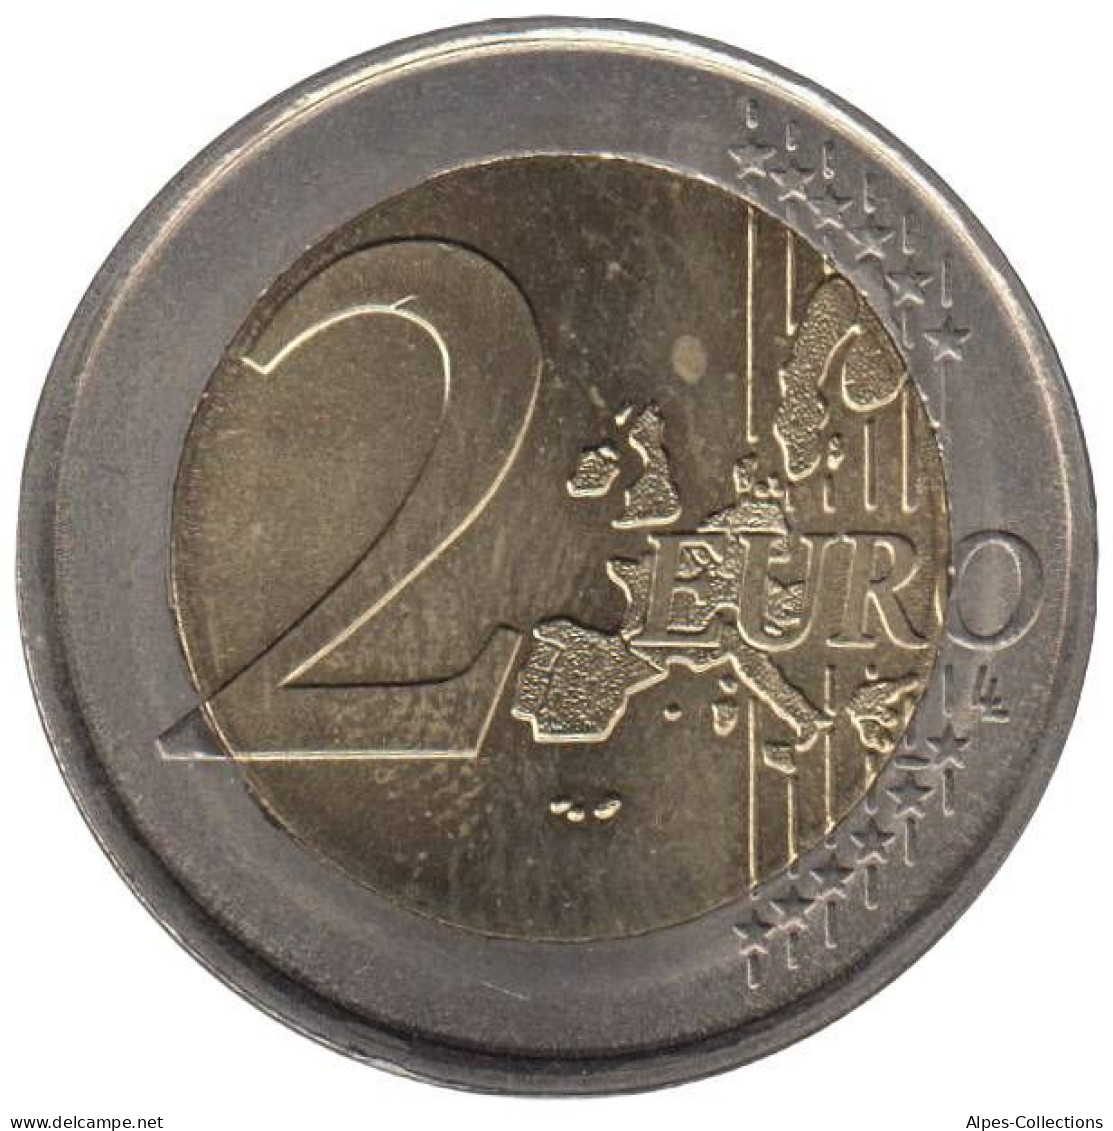 PO20004.1 - PORTUGAL - 2 Euros - 2004 - Portugal